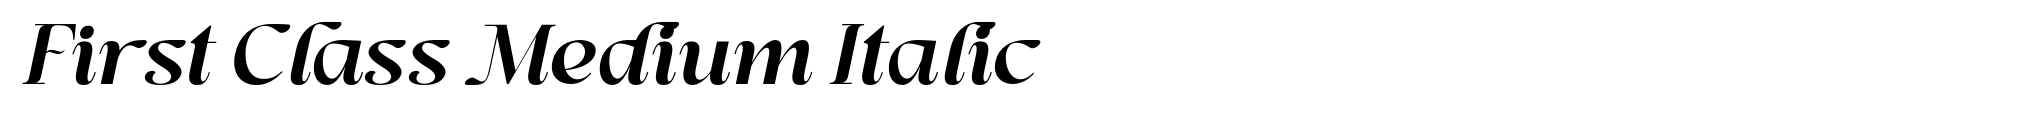 First Class Medium Italic image